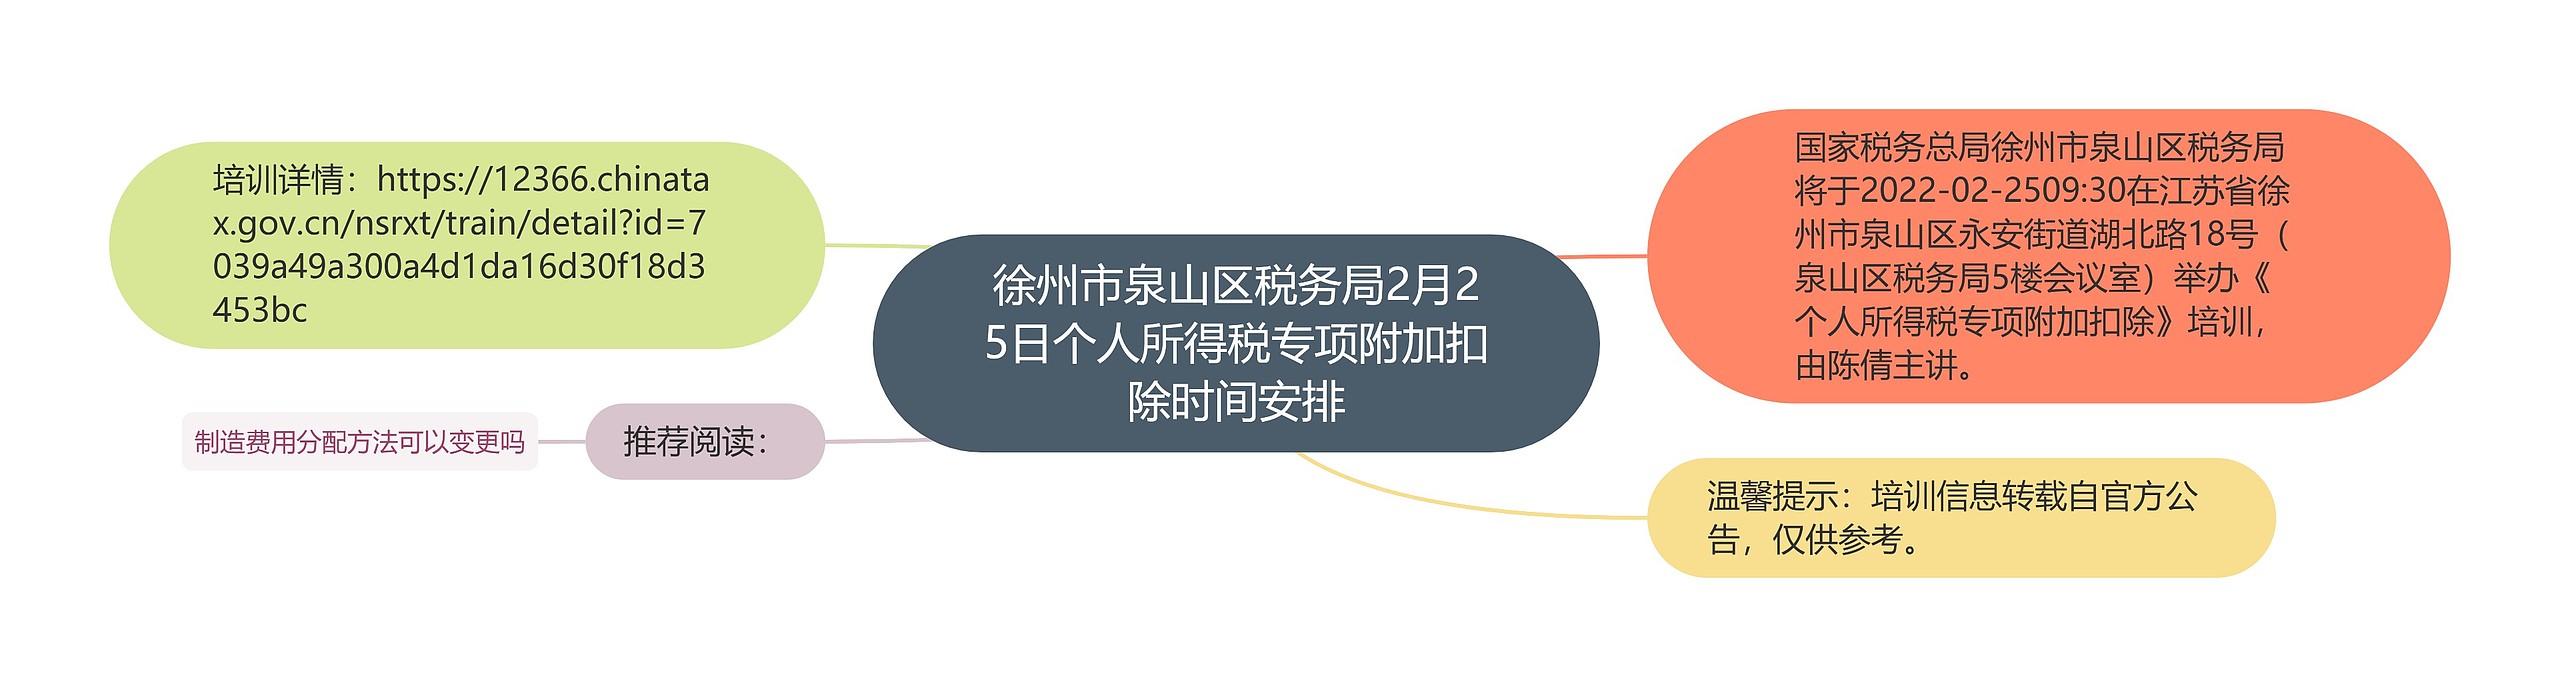 徐州市泉山区税务局2月25日个人所得税专项附加扣除时间安排